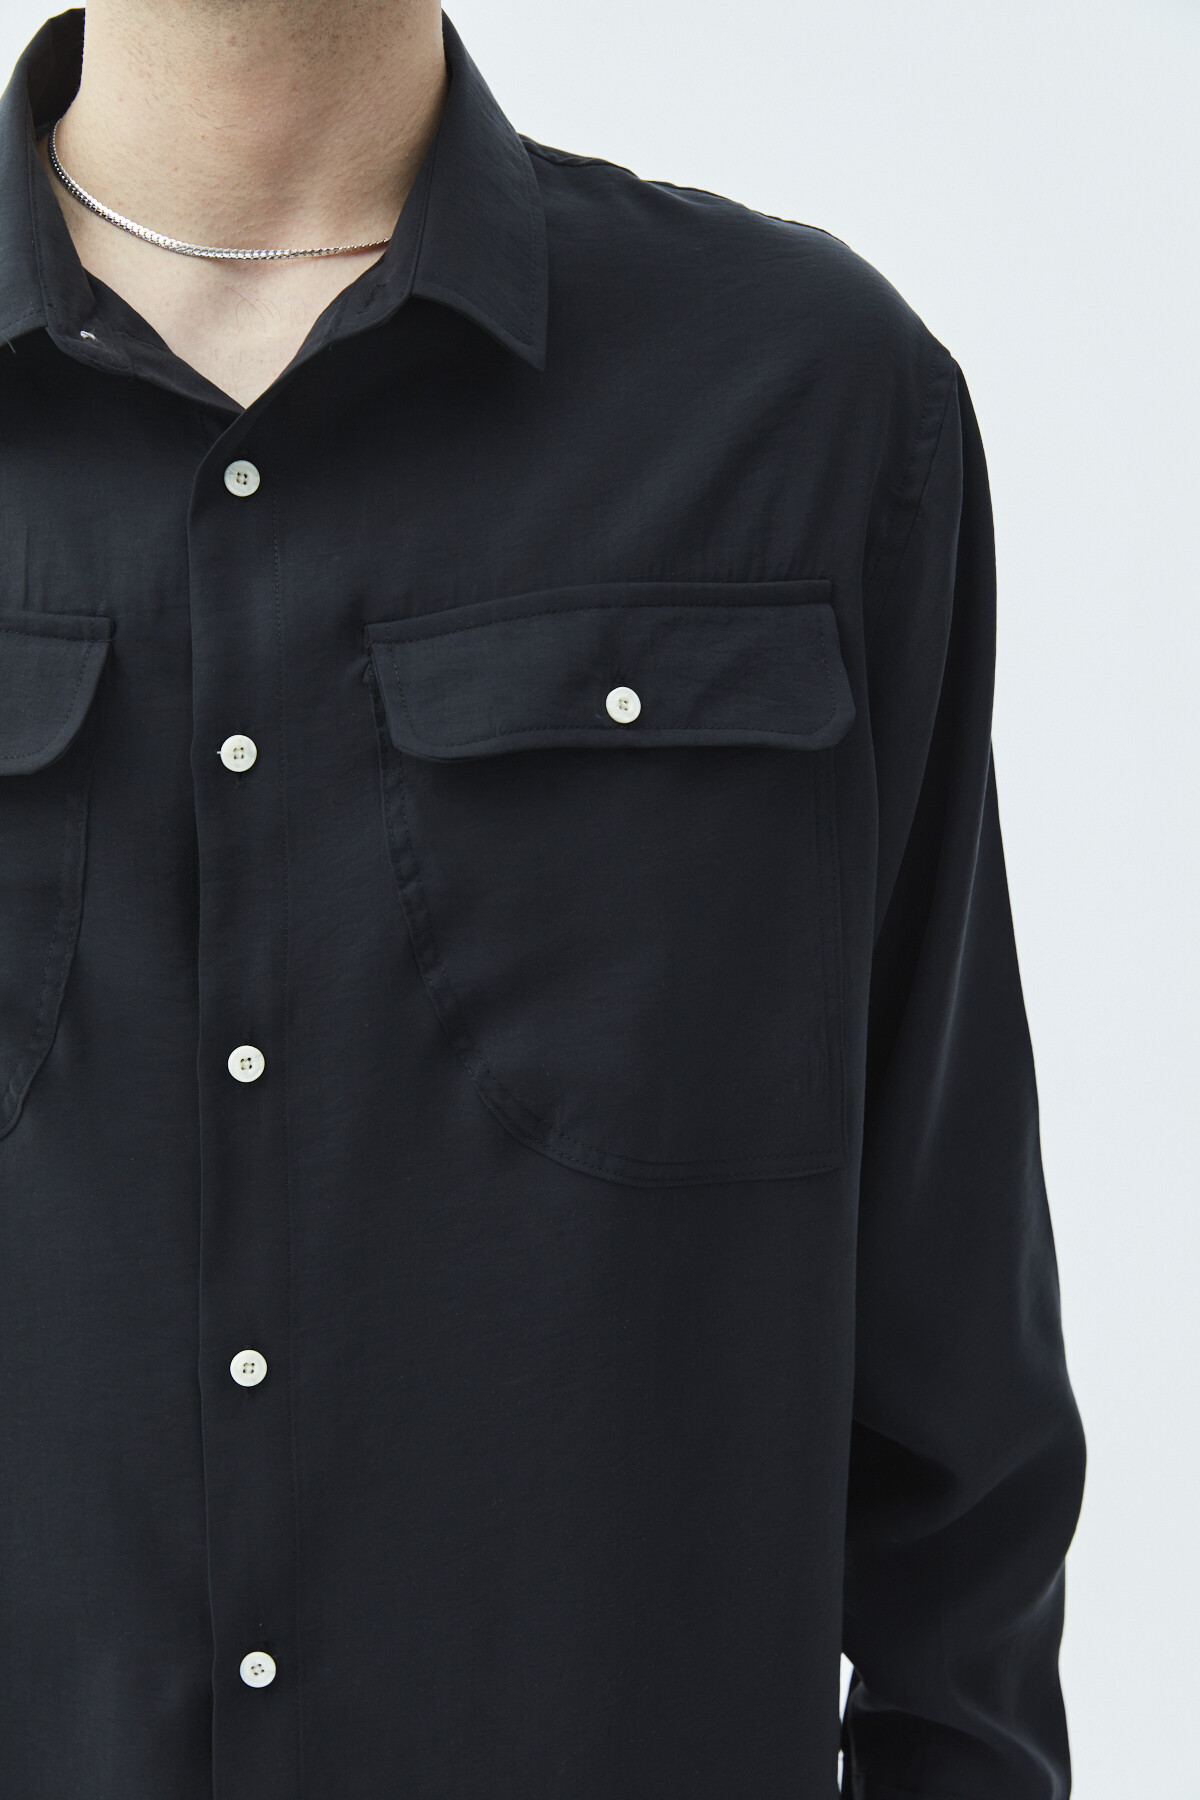 Çift Cep Detaylı  Uzun Kol Modal Kumaş  Gömlek Siyah